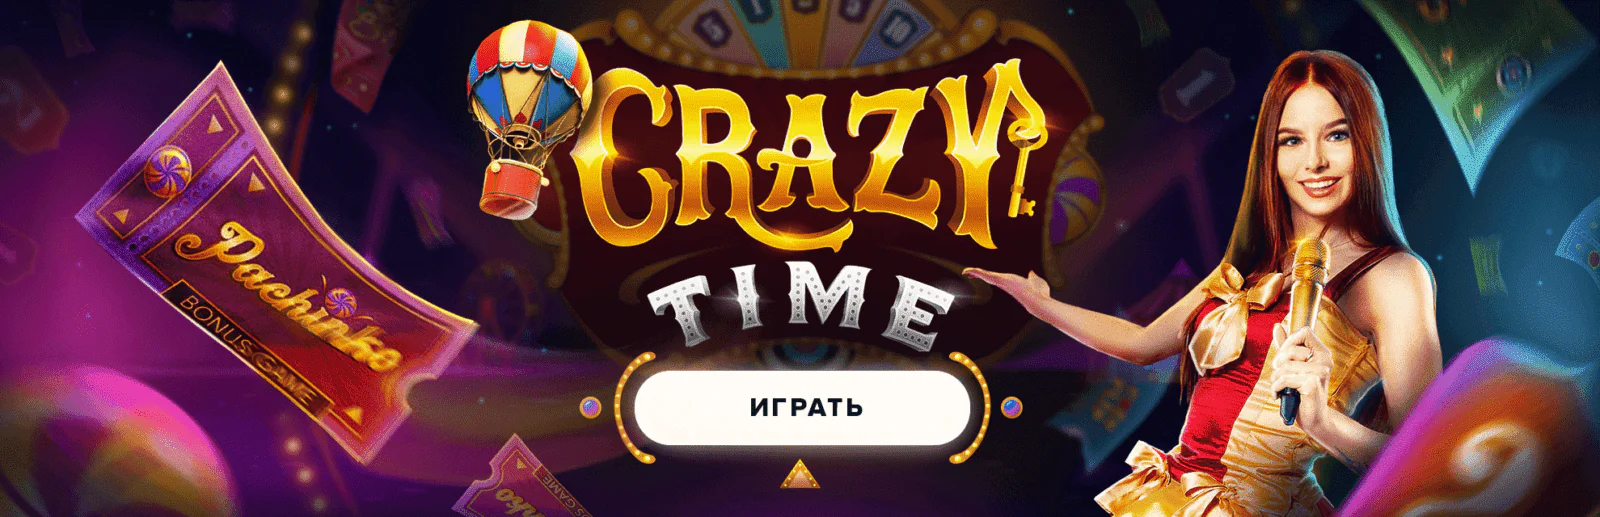 Новые игры в онлайн казино 1вин. Лучшие игры на гривны в Украине